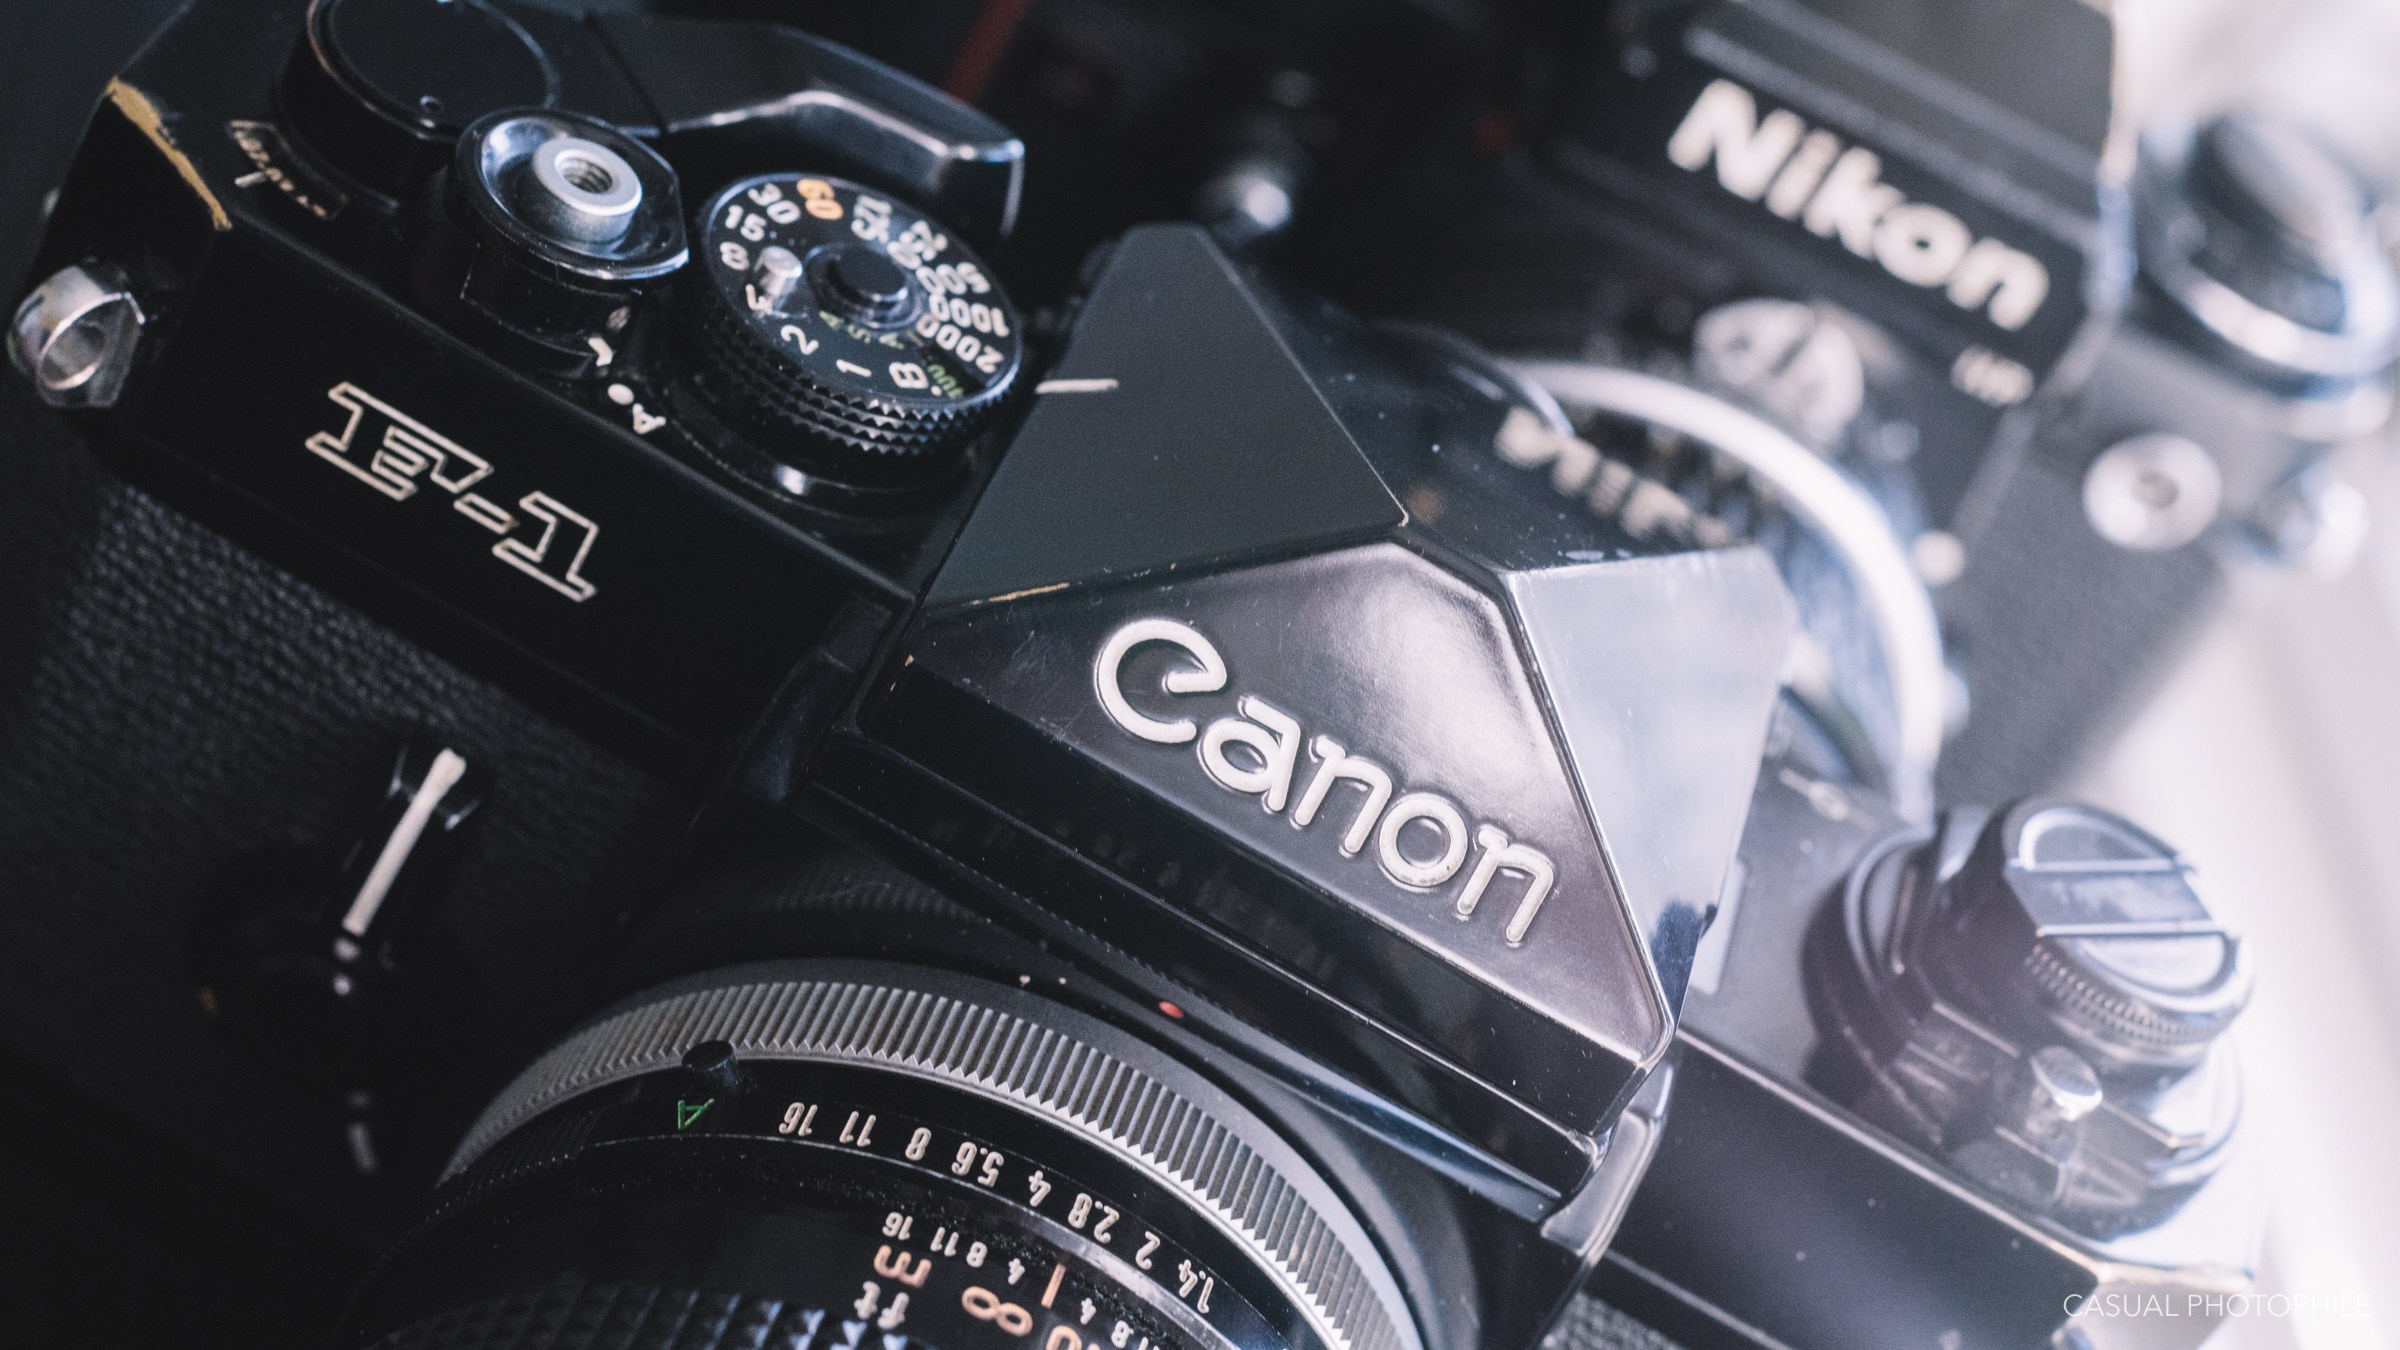 Canon F 1 - HD Wallpaper 